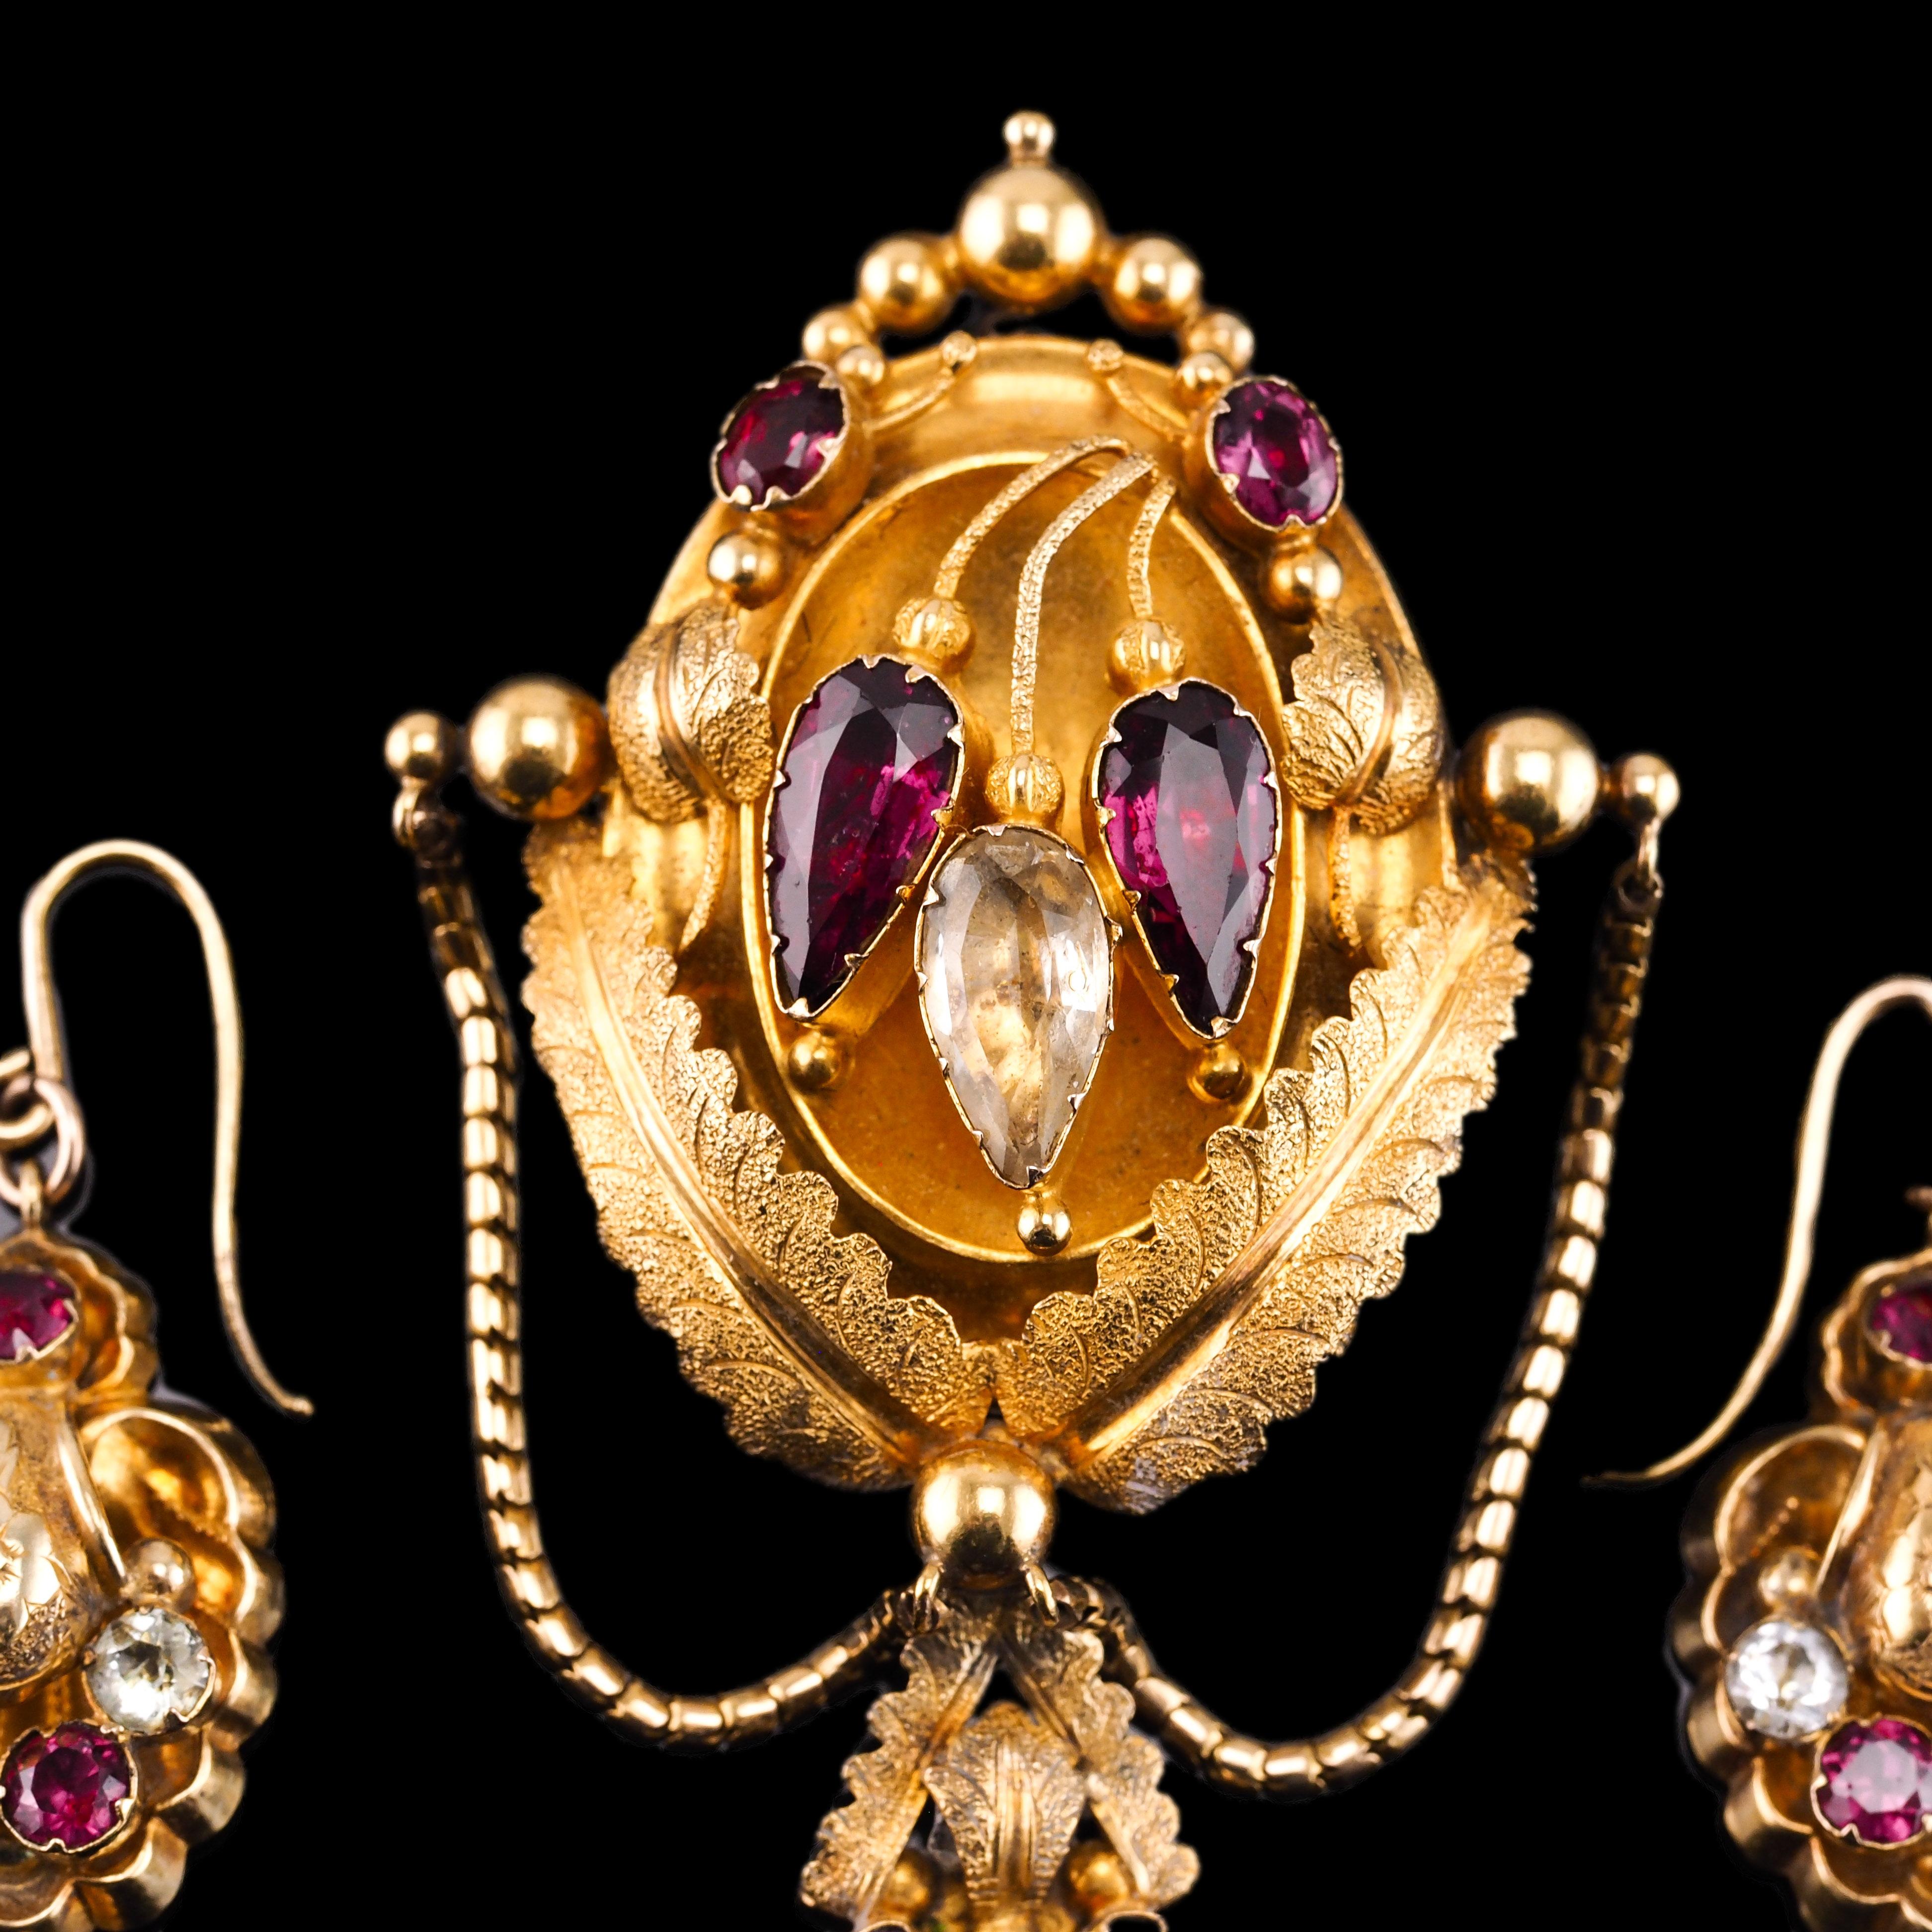 Antique 18K Gold Brooch Pendant & Earrings Garnet & Chrysoberyl - c.1870 For Sale 6